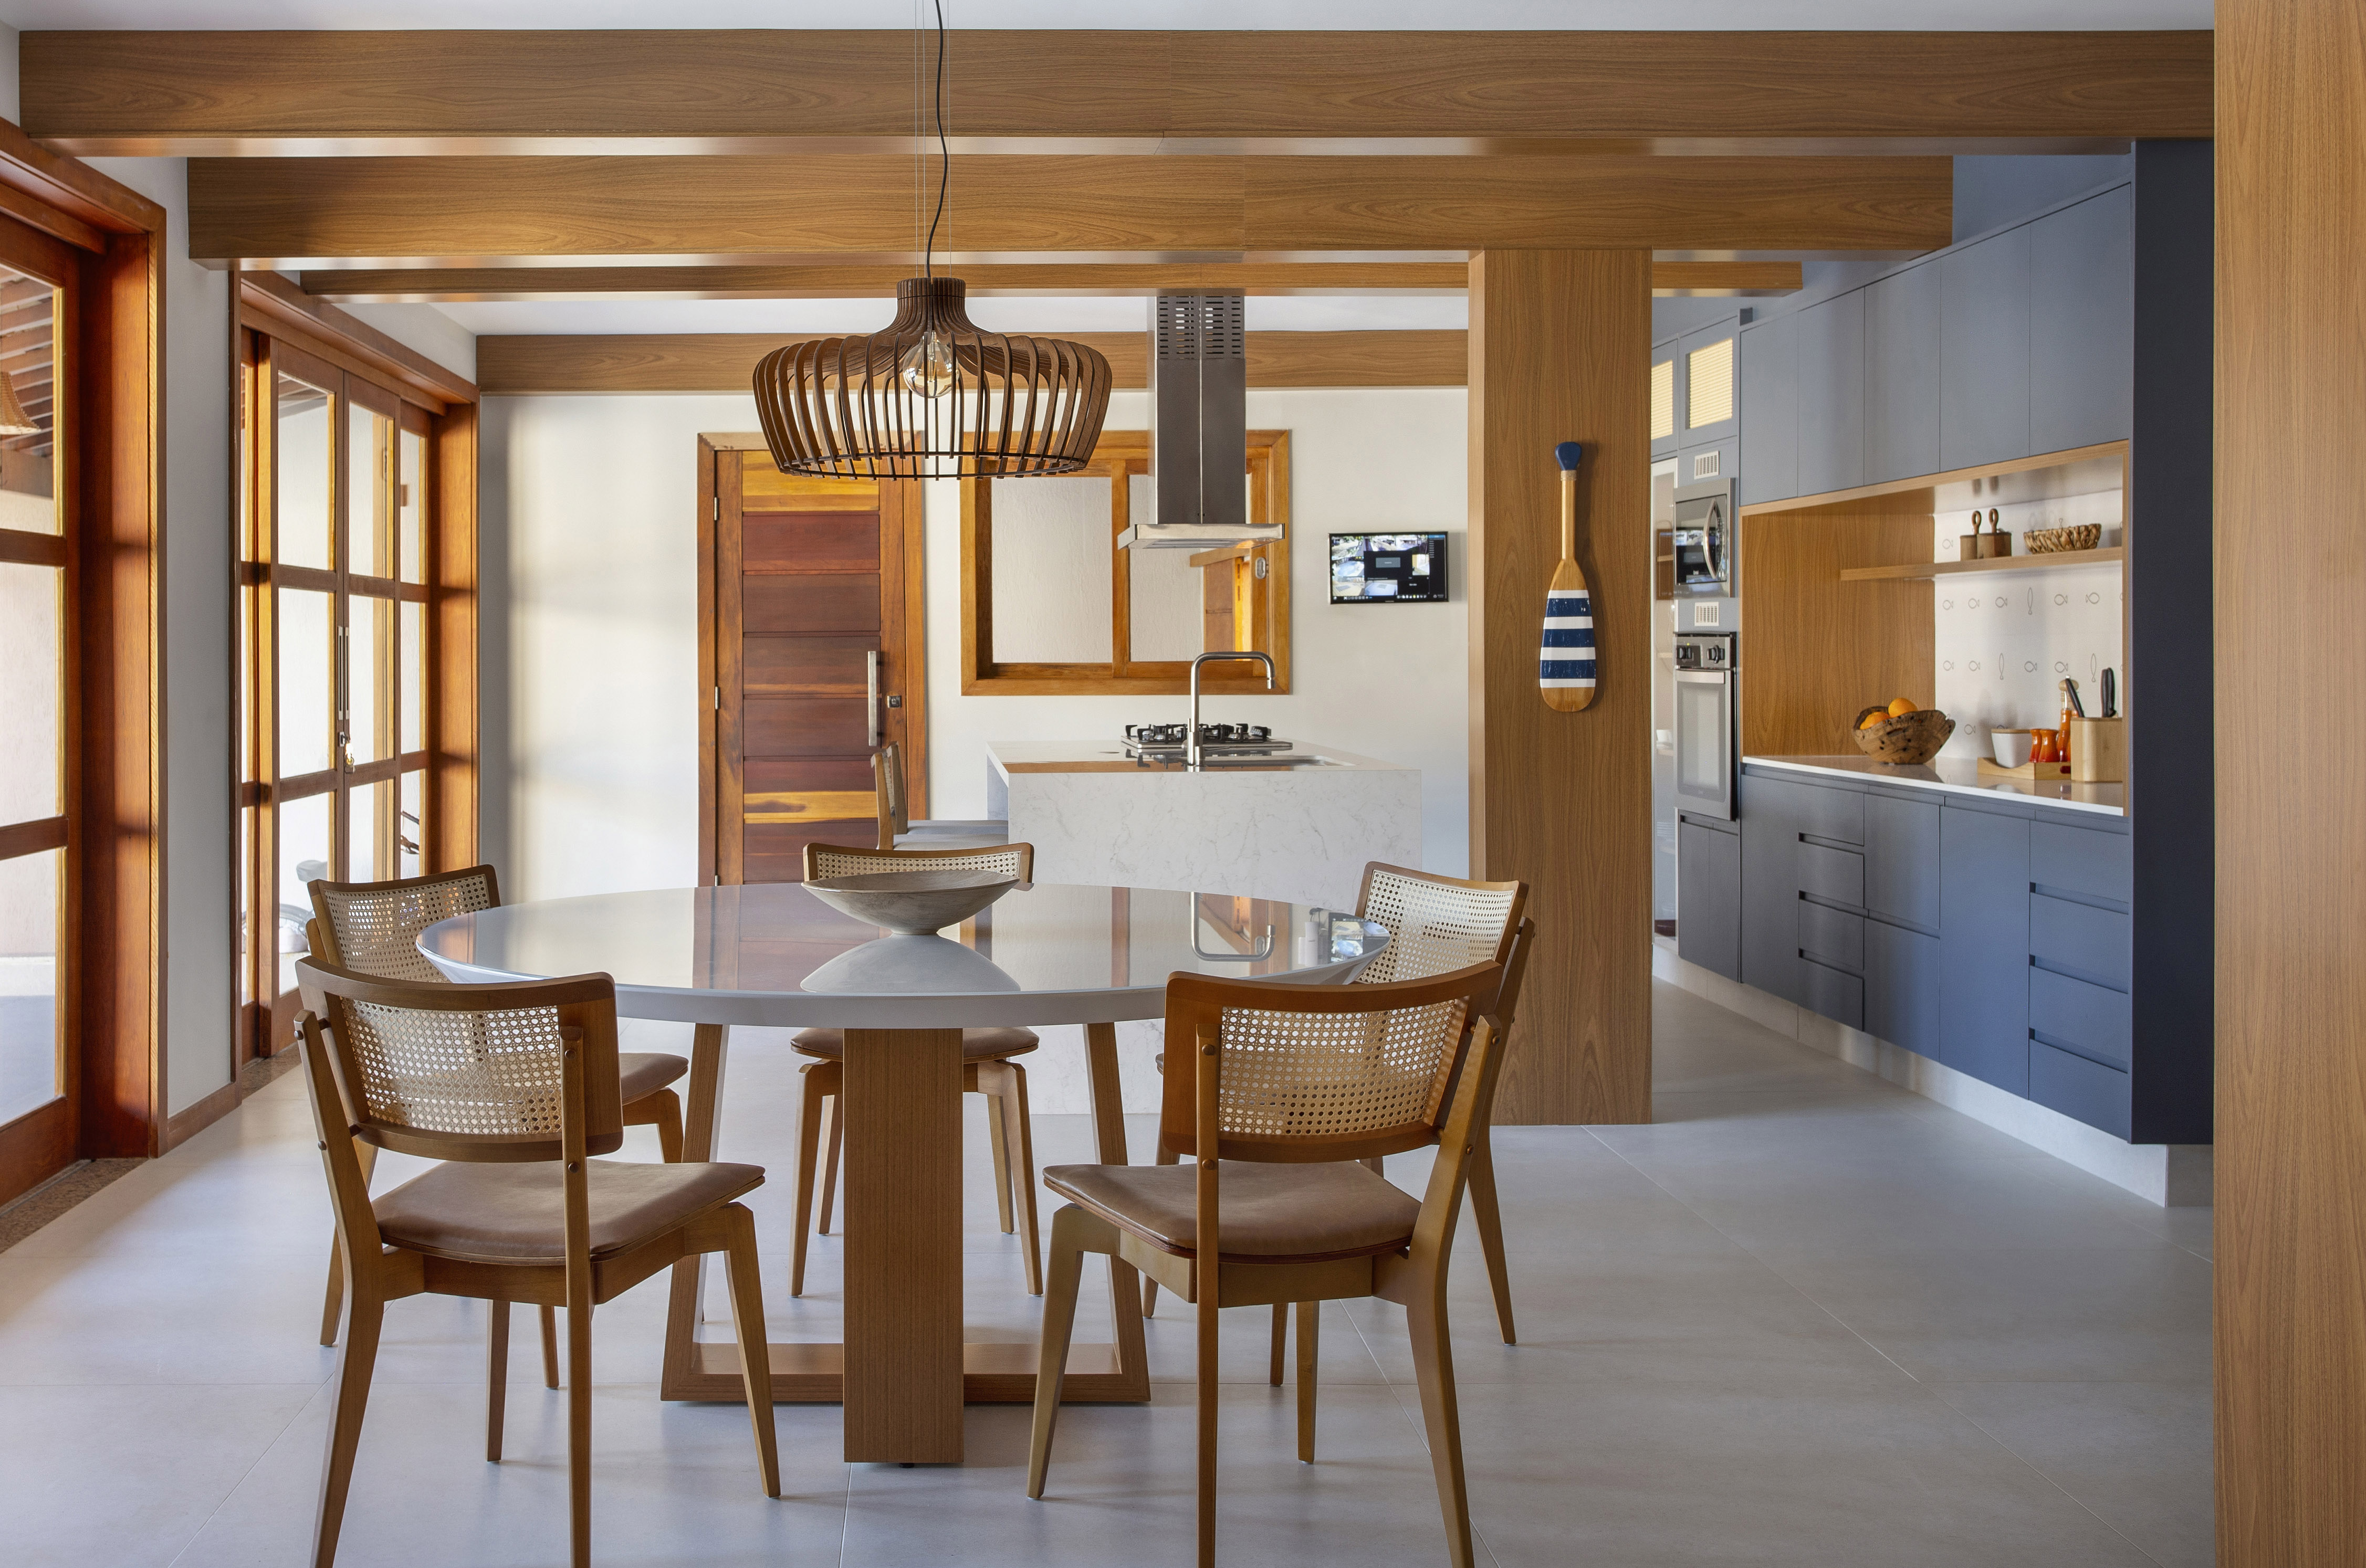 Ilha de cozinha revestida de azulejos com peixes é destaque nesta casa. Projeto de Travessa Arquitetura. Na foto, sala de jantar integrada com cozinha, luminária de palhinha, armários azuis.